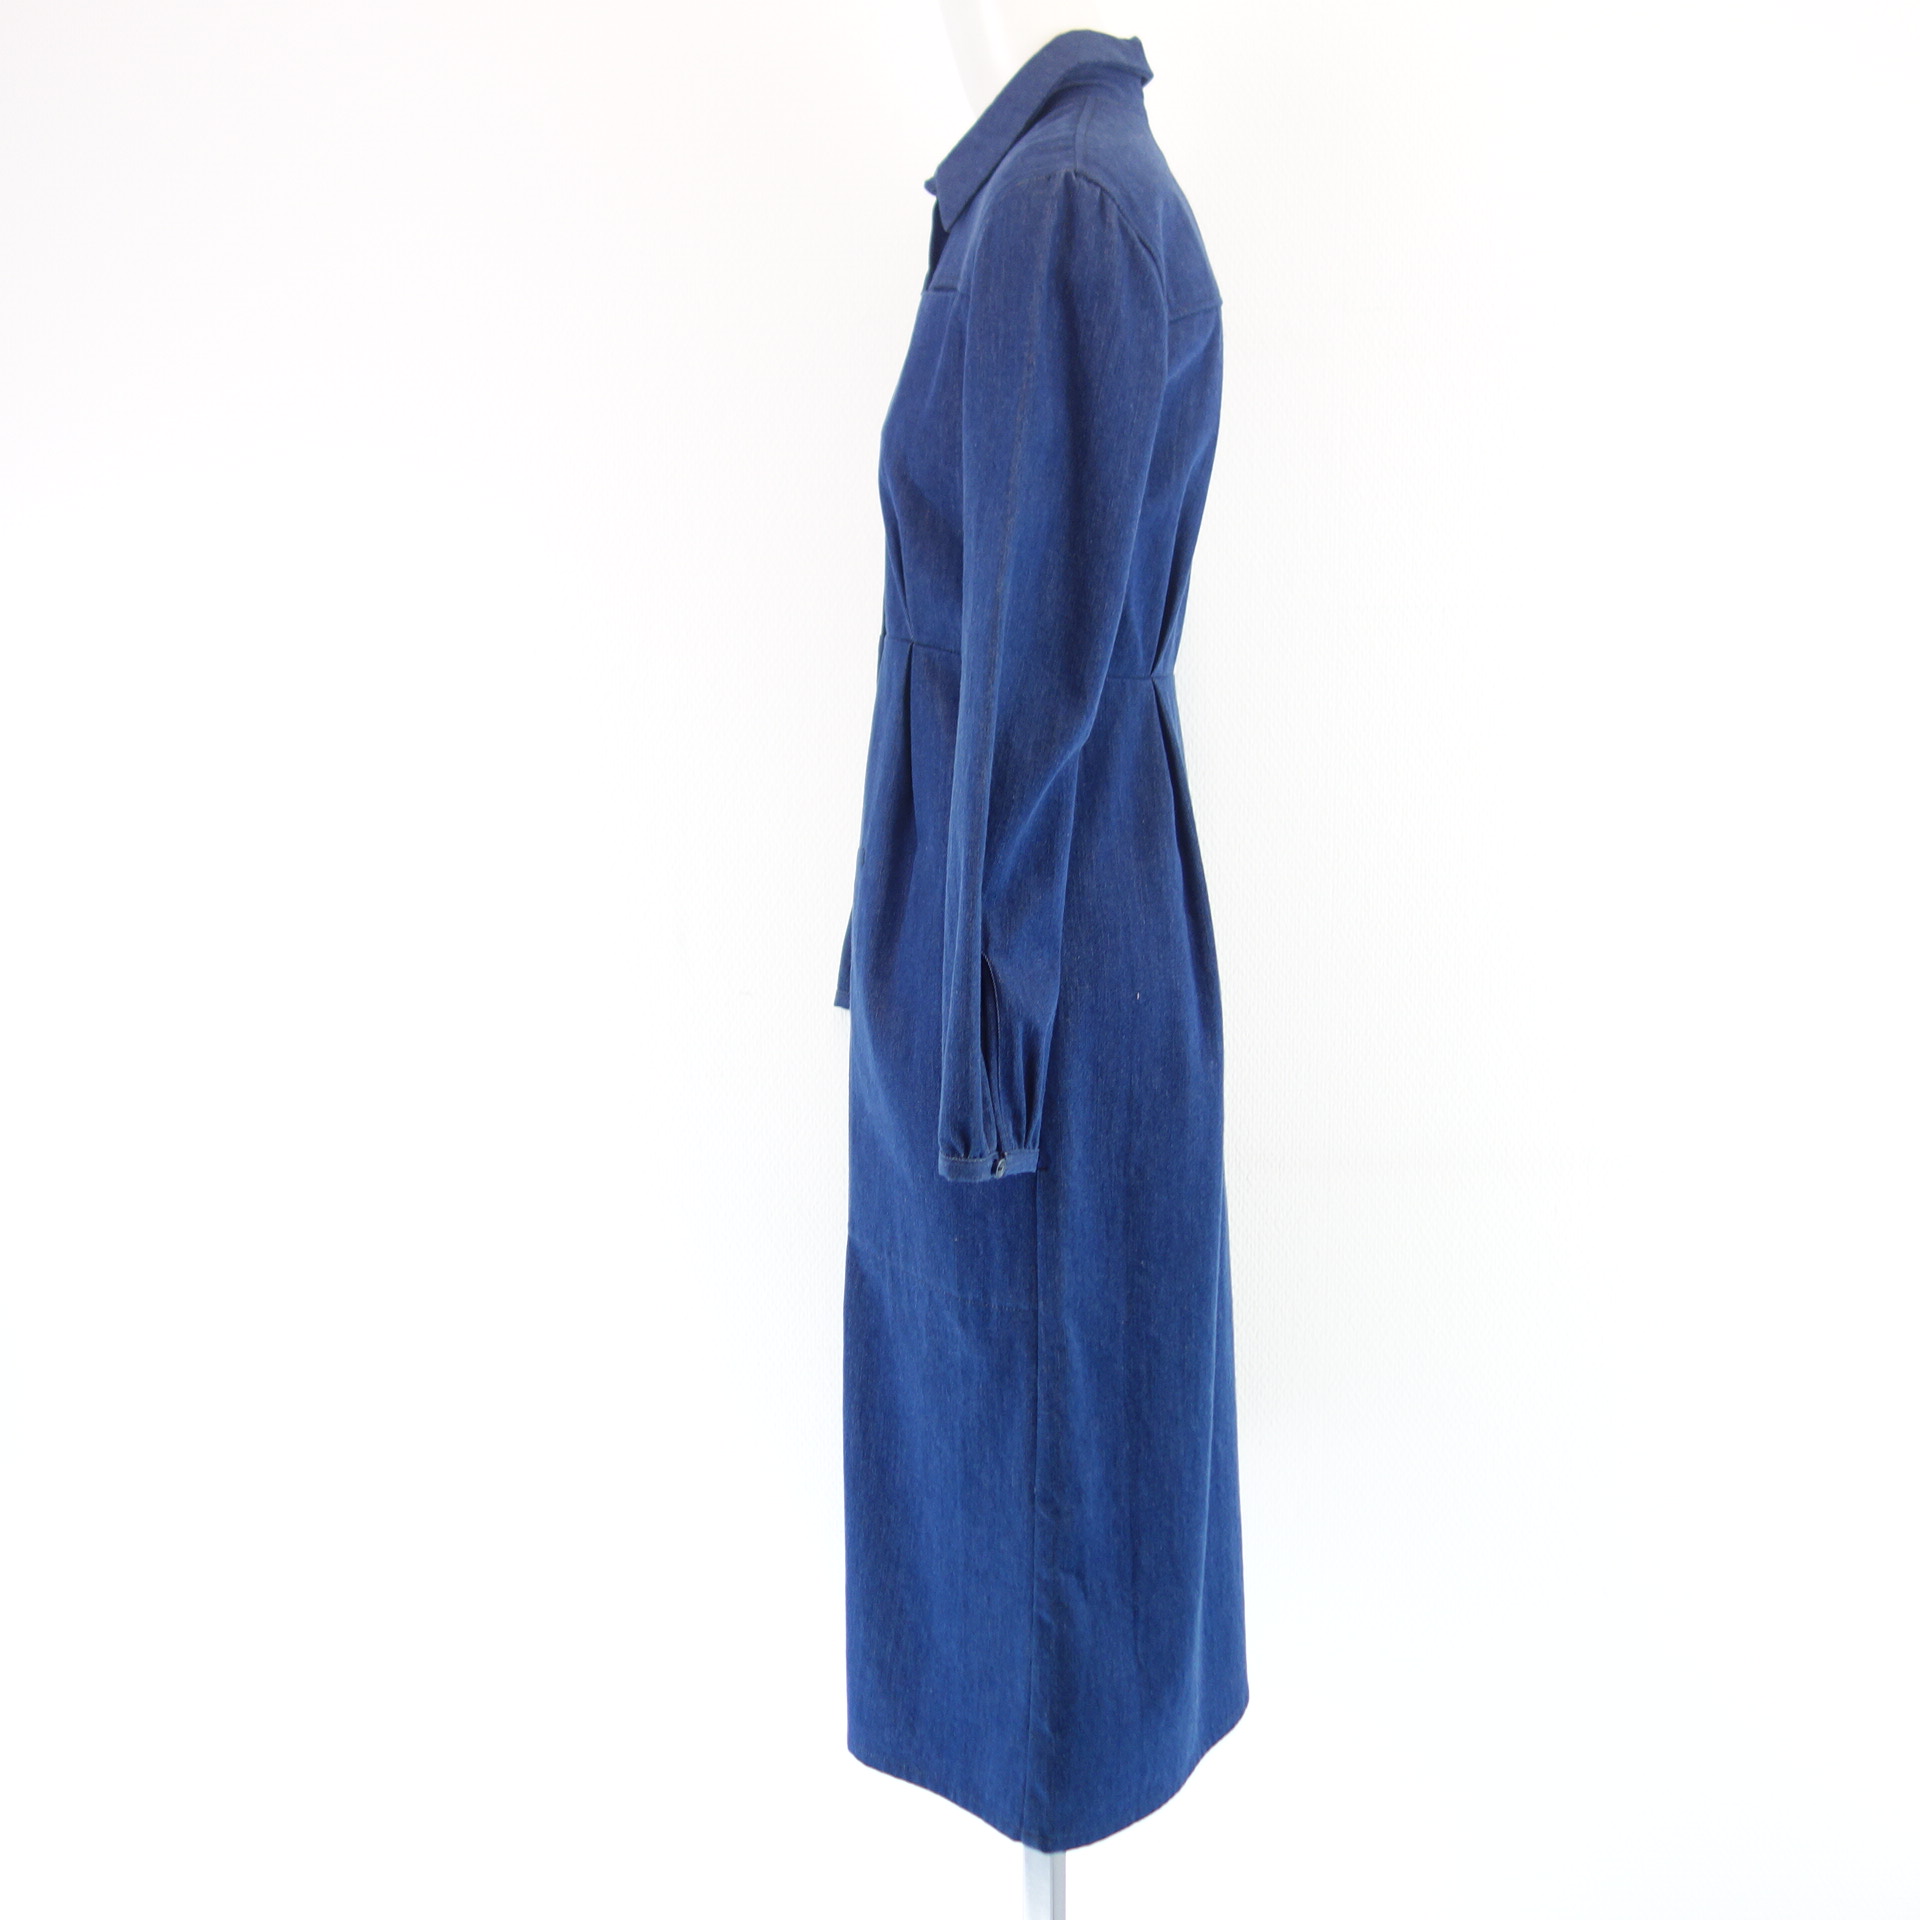 HAPPY HAUS Damen Midi Jeans Kleid Jeanskleid Blau Denim Gr 34 mit Taschen